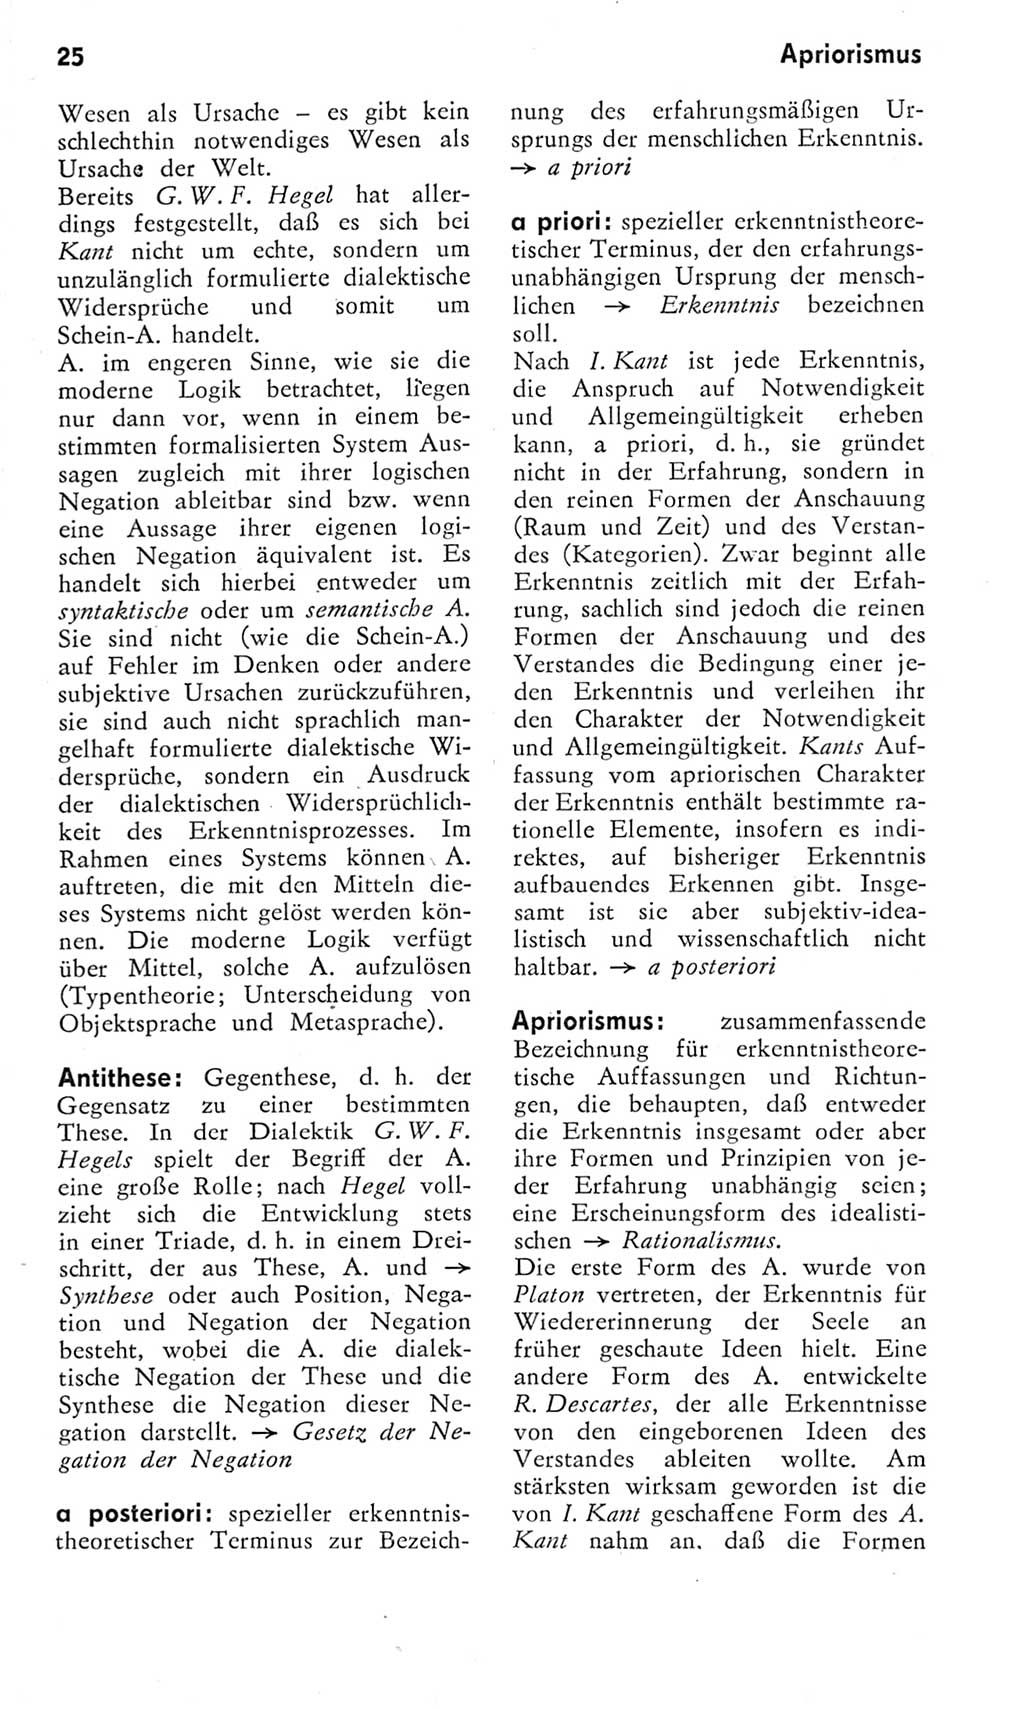 Kleines Wörterbuch der marxistisch-leninistischen Philosophie [Deutsche Demokratische Republik (DDR)] 1975, Seite 25 (Kl. Wb. ML Phil. DDR 1975, S. 25)